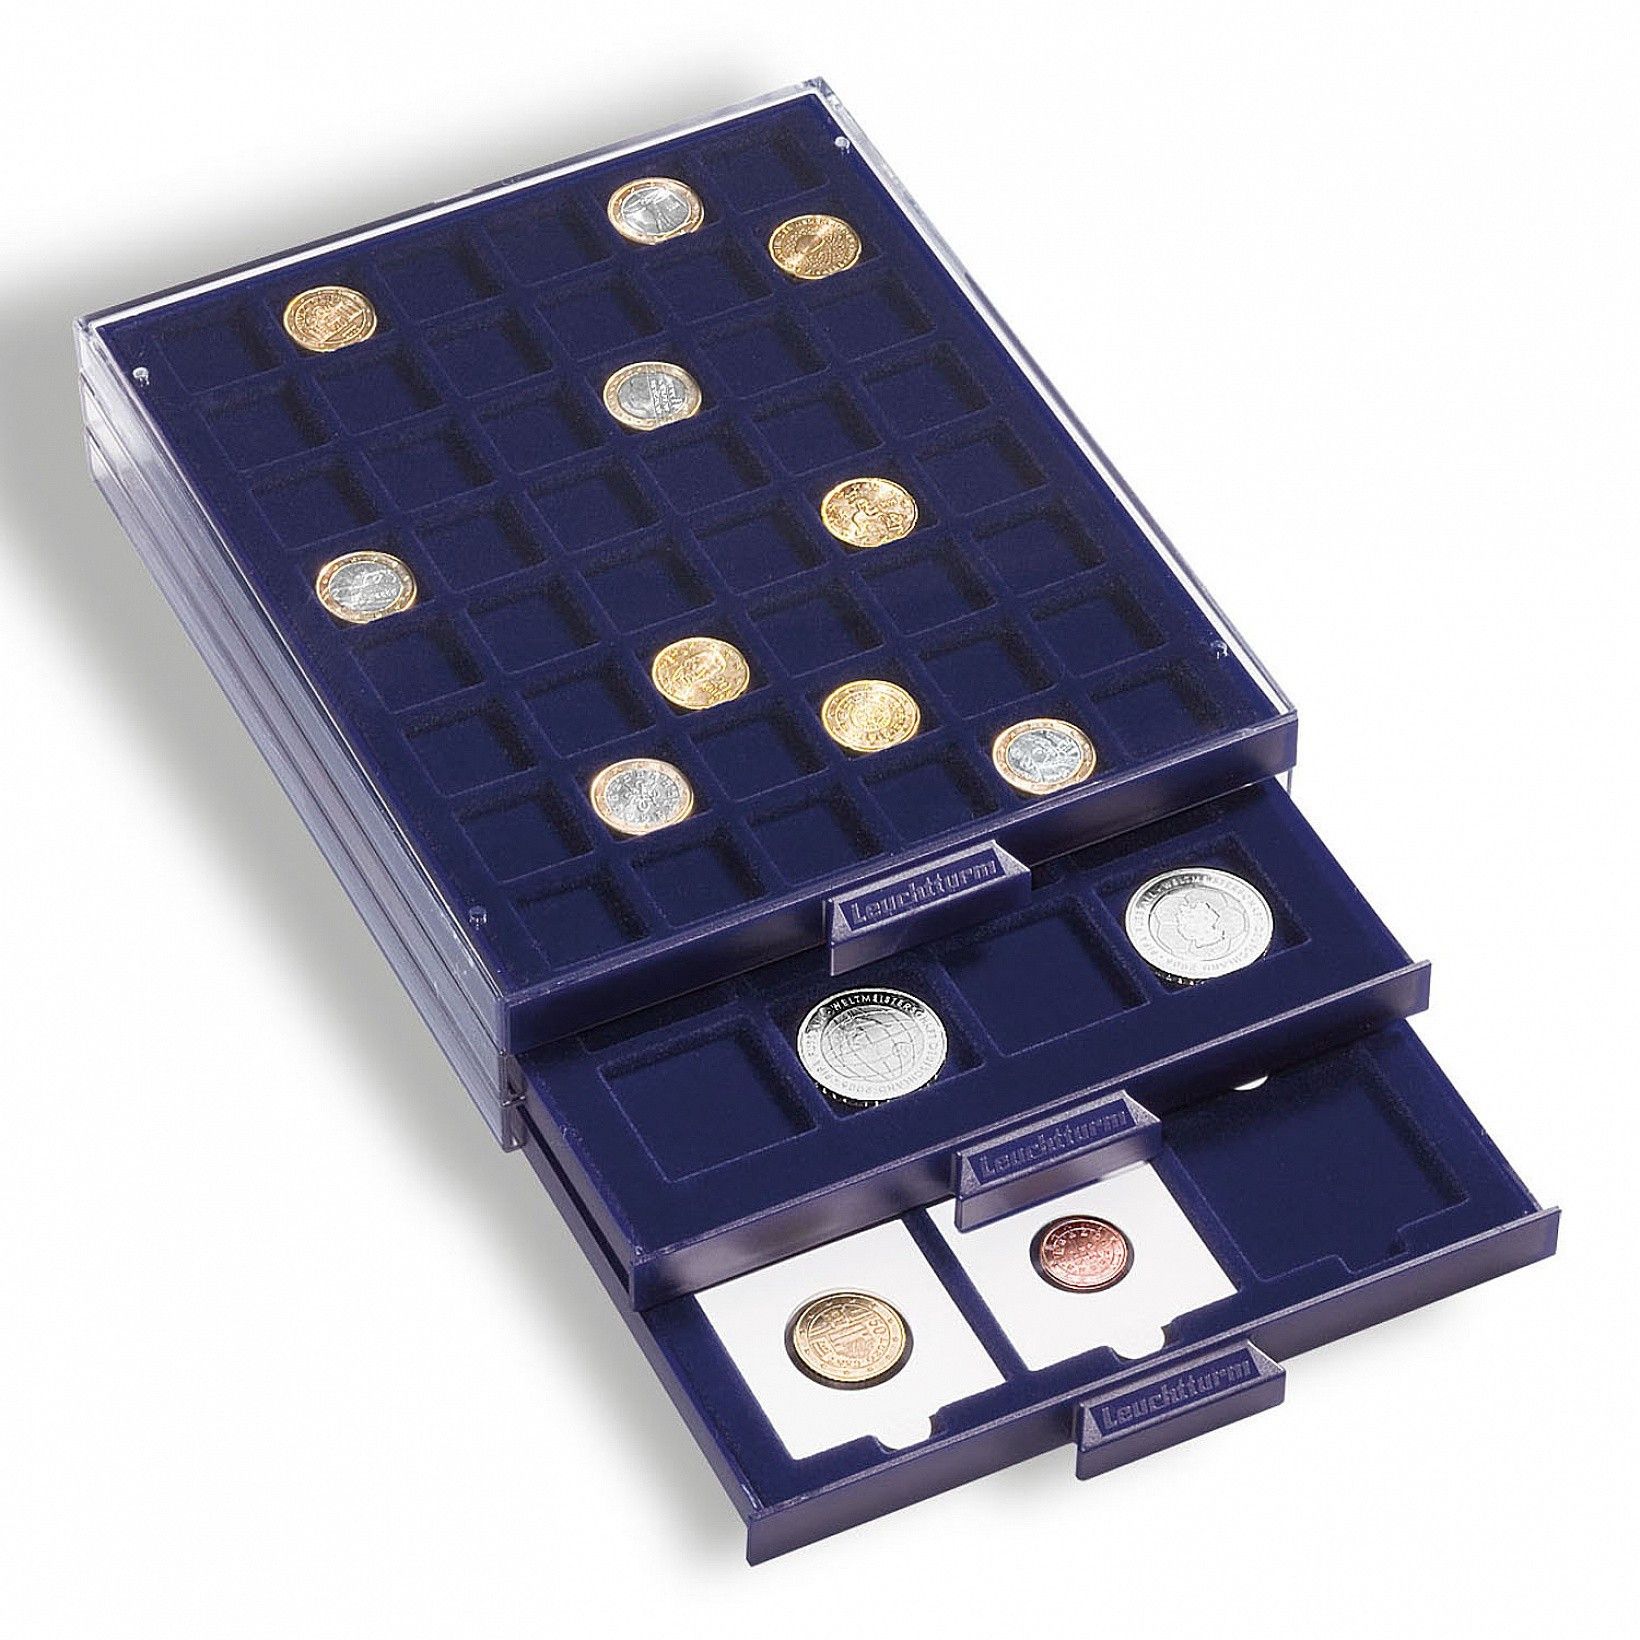 Valisette numismatique pour médailliers - Bourse du collectionneur